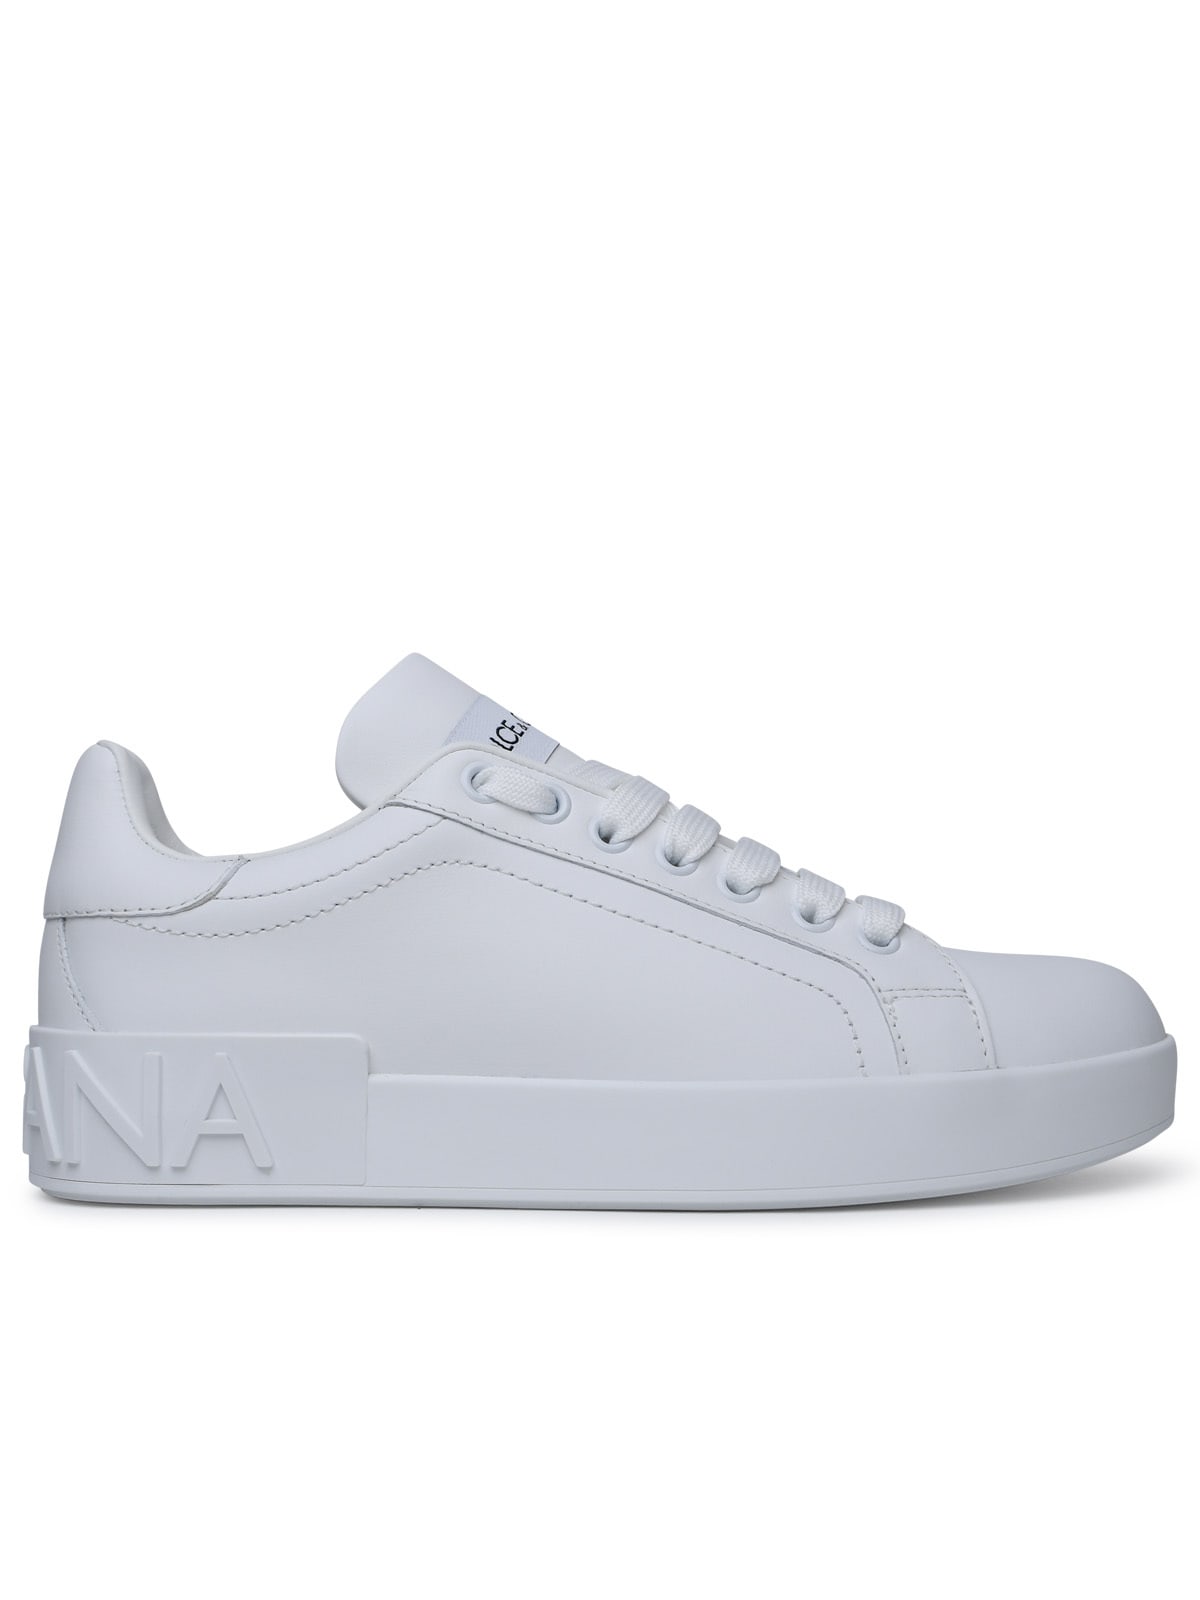 Dolce & Gabbana Portofino White Calf Leather Sneakers In Bianco